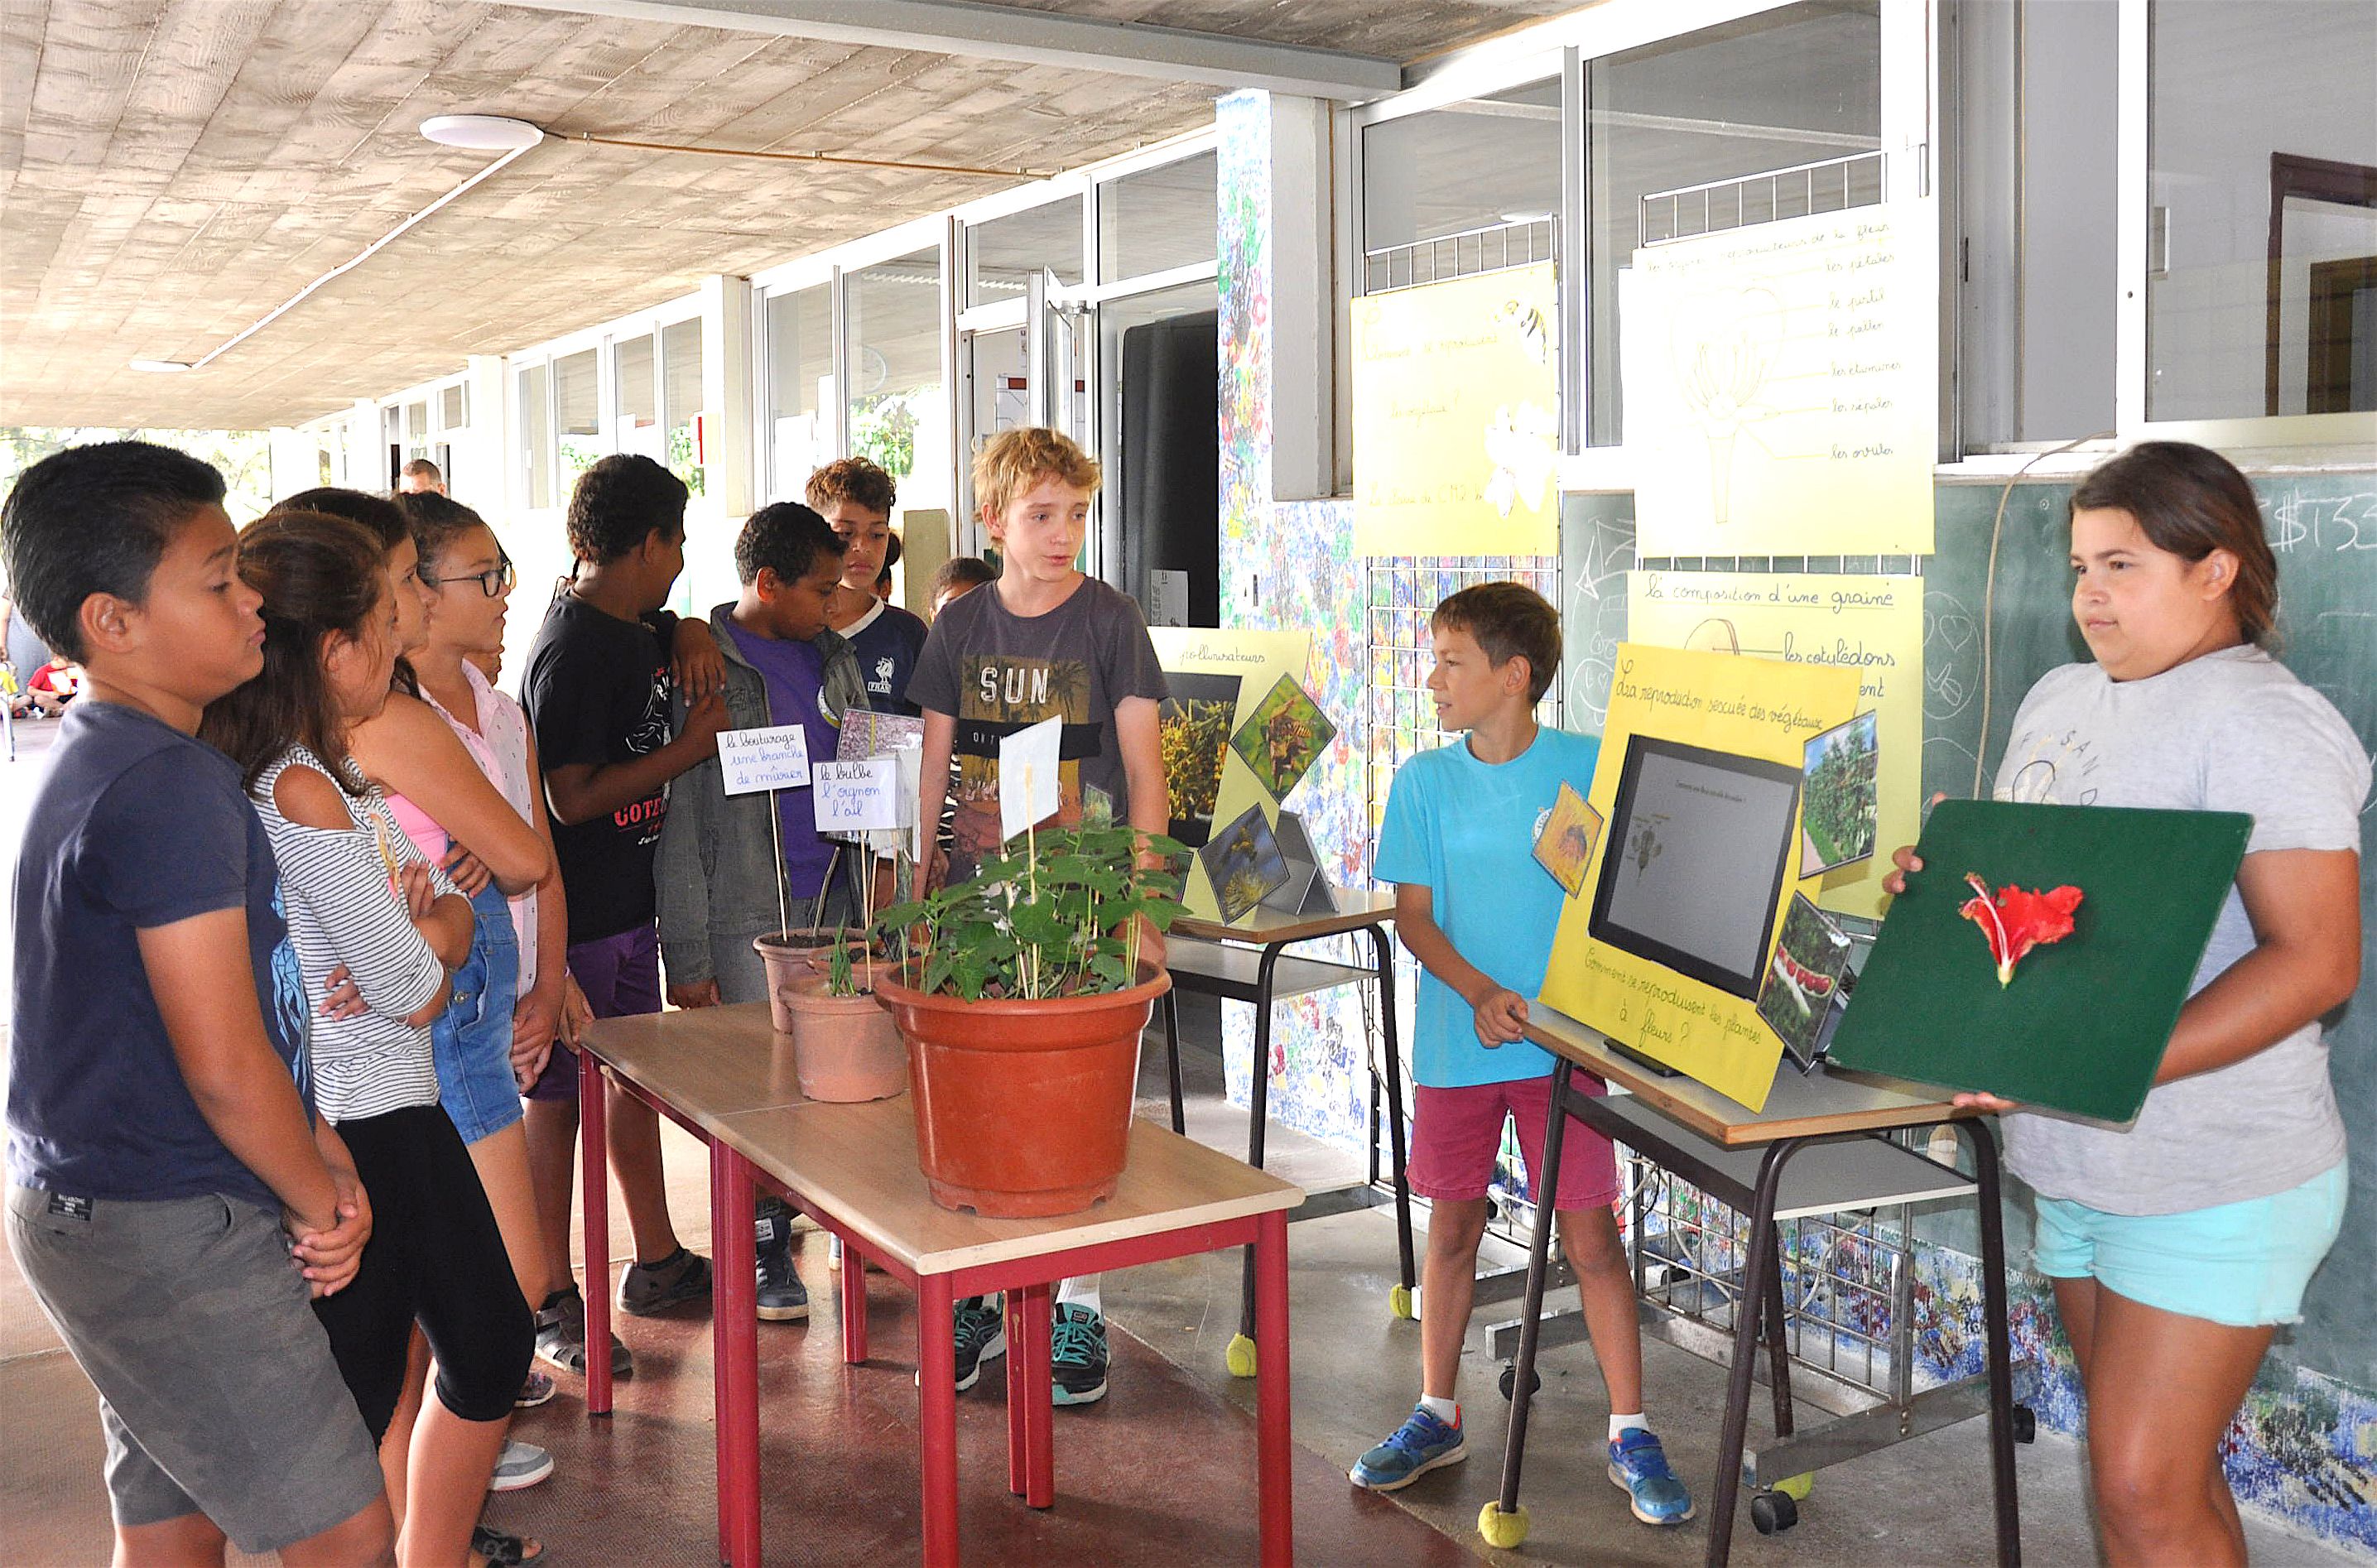 Les élèves de CM2 B ont expliqué aux visiteurs et à leurs camarades des autres classes comment se reproduisent les végétaux à partir des plantations réalisées en classe. Ils ont fait appel à différentes techniques : bouturages, tubercules et marcottages.